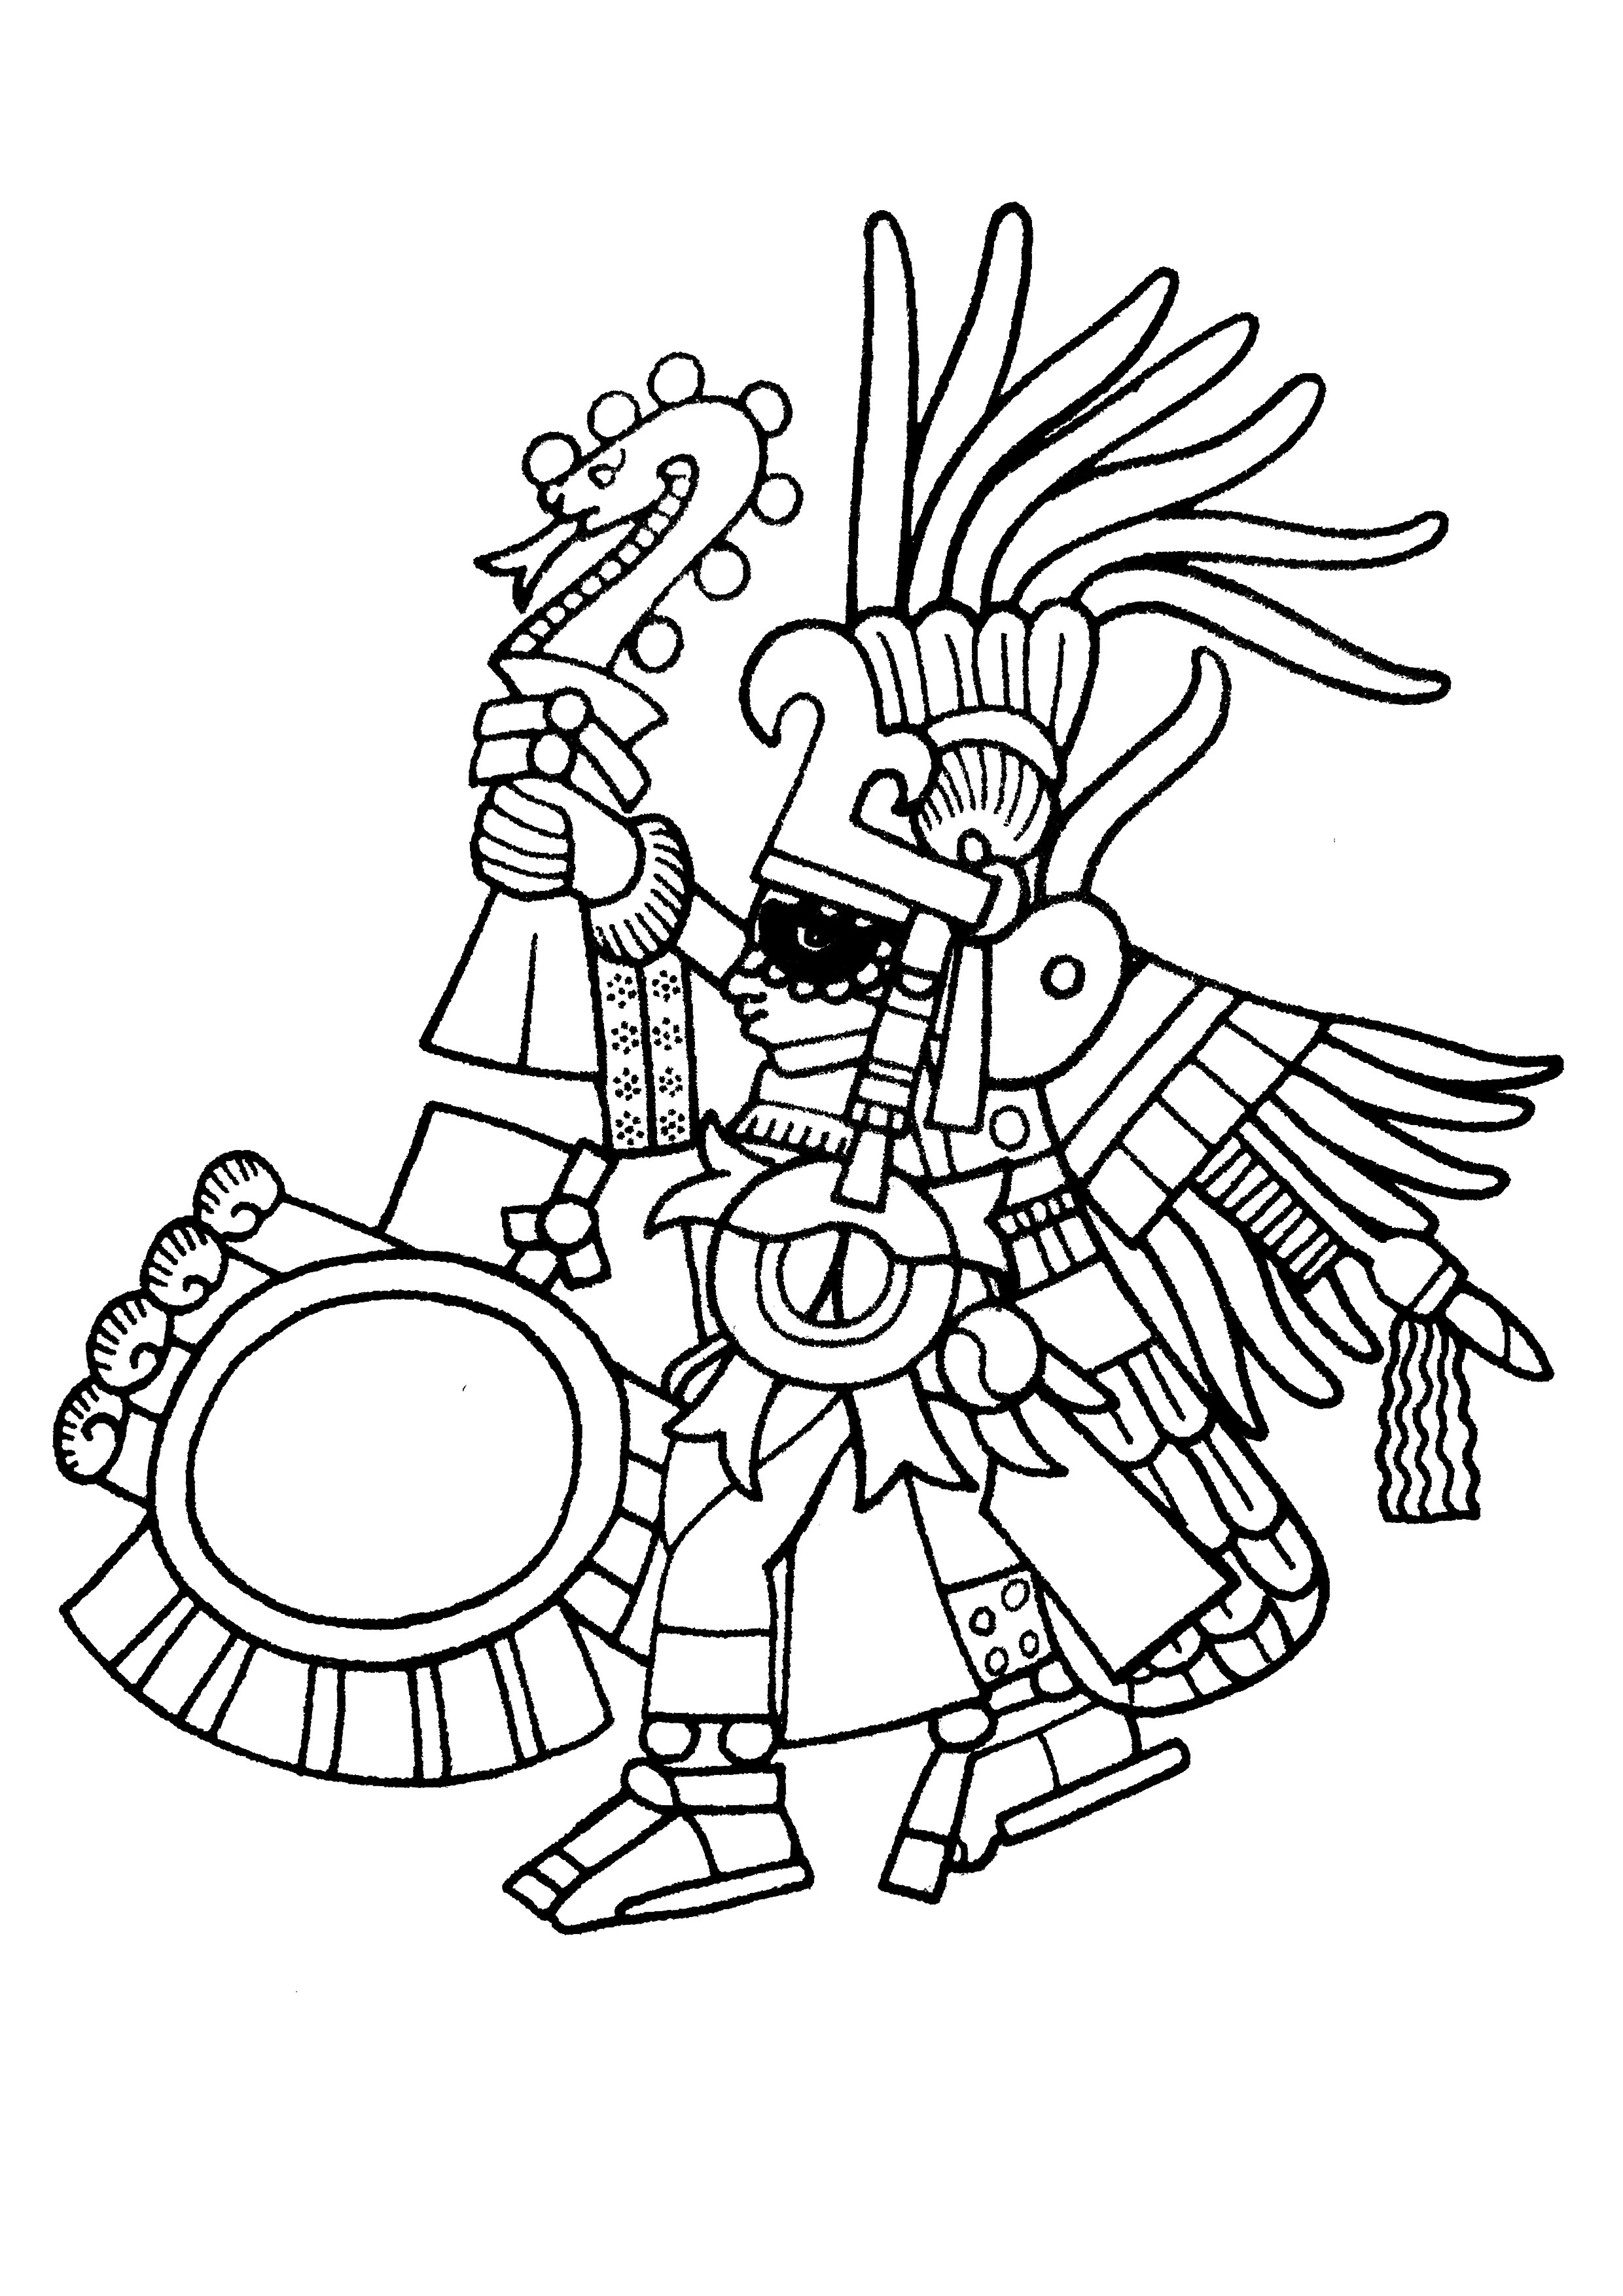 Desenhos simples para colorir gratuitos para crianças de Maias, astecas e incas